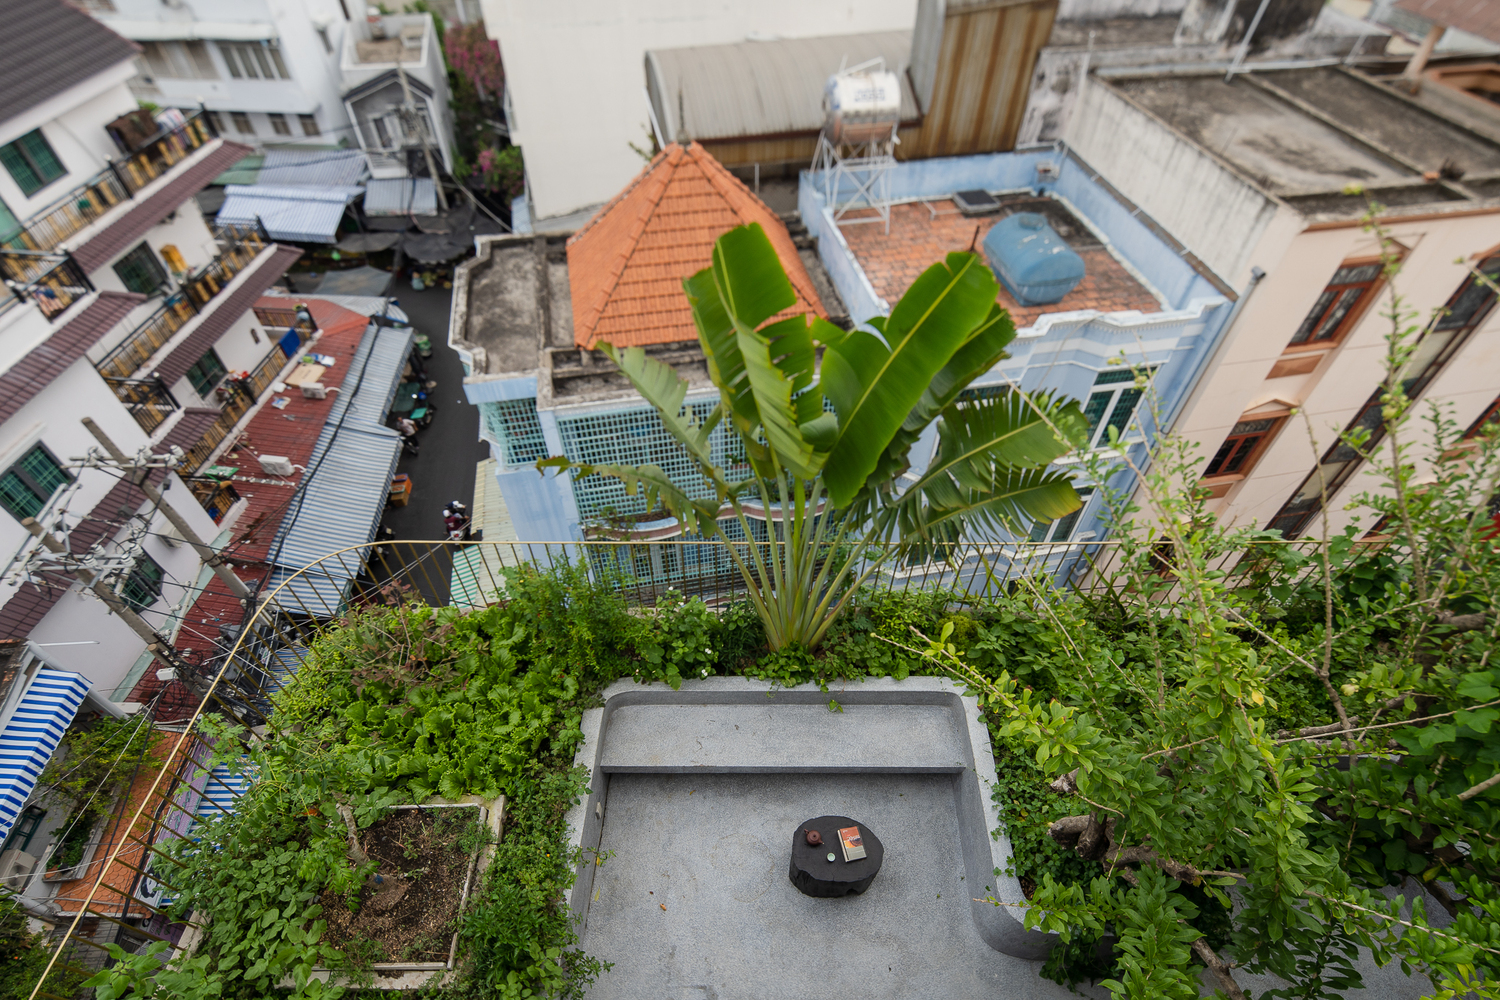 Thảm thực vật xanh mướt trên tầng thượng cũng là đặc điểm khiến nhà phố nổi bật hẳn so với các công trình xung quanh.